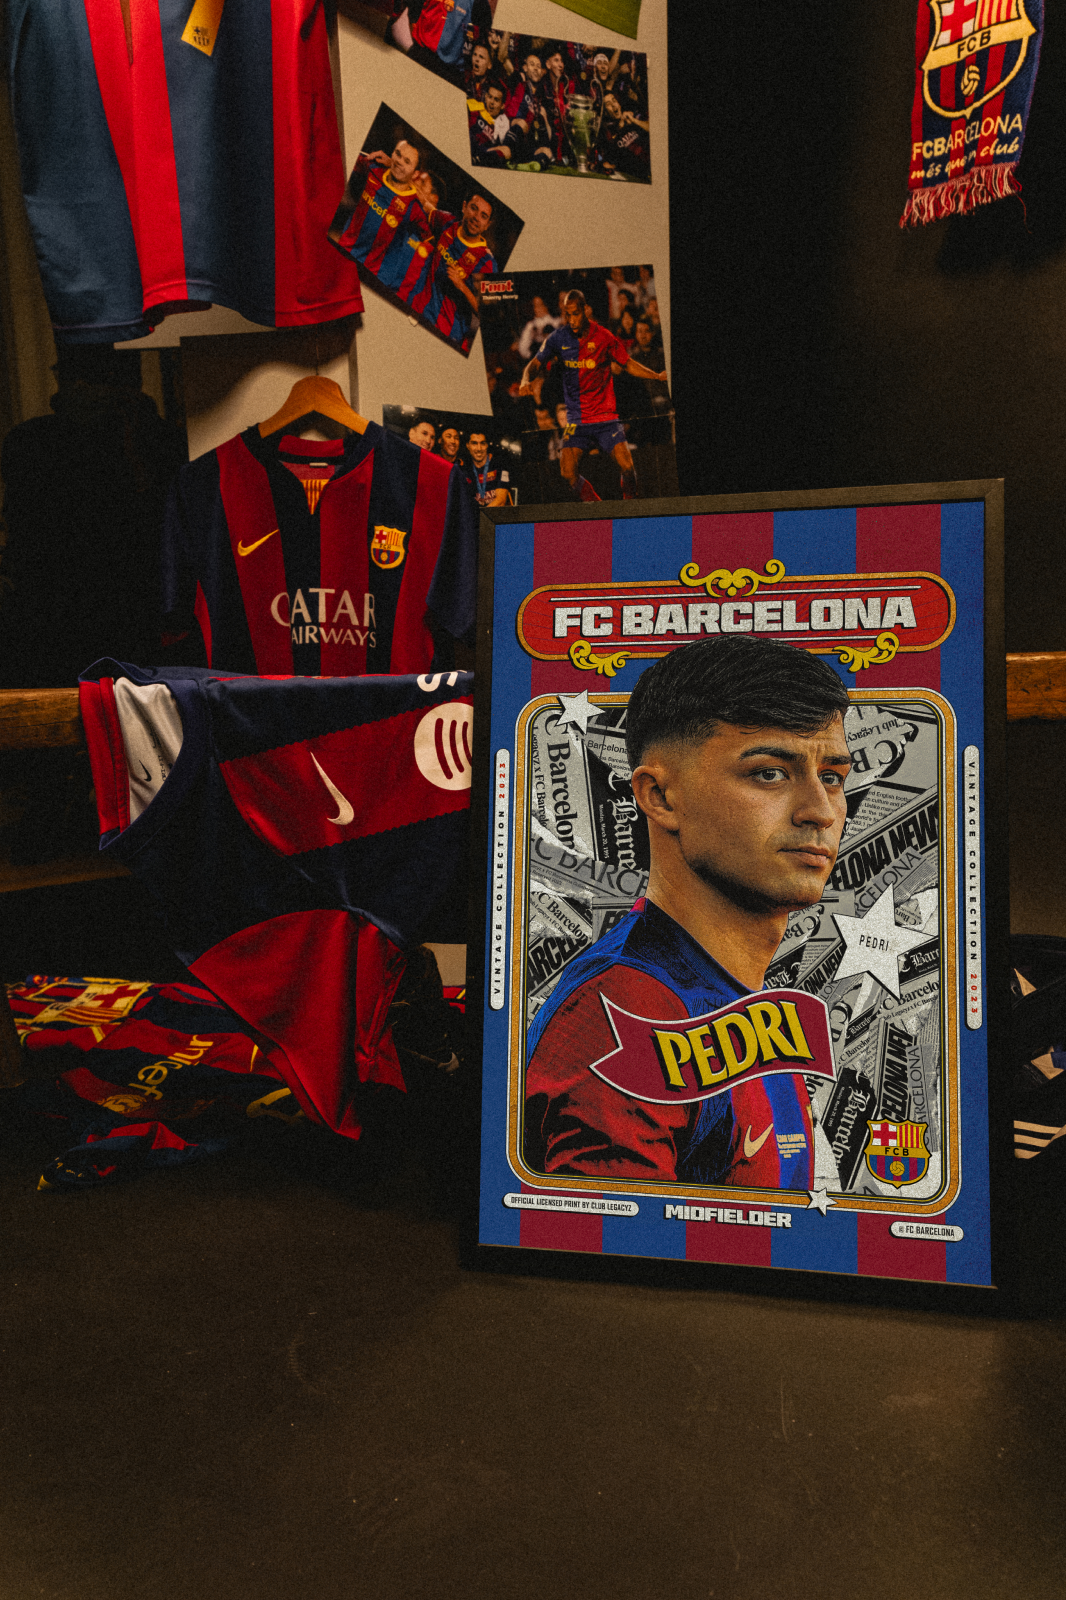 FC Barcelone - Poster Retro Pedri 100 exemplaires